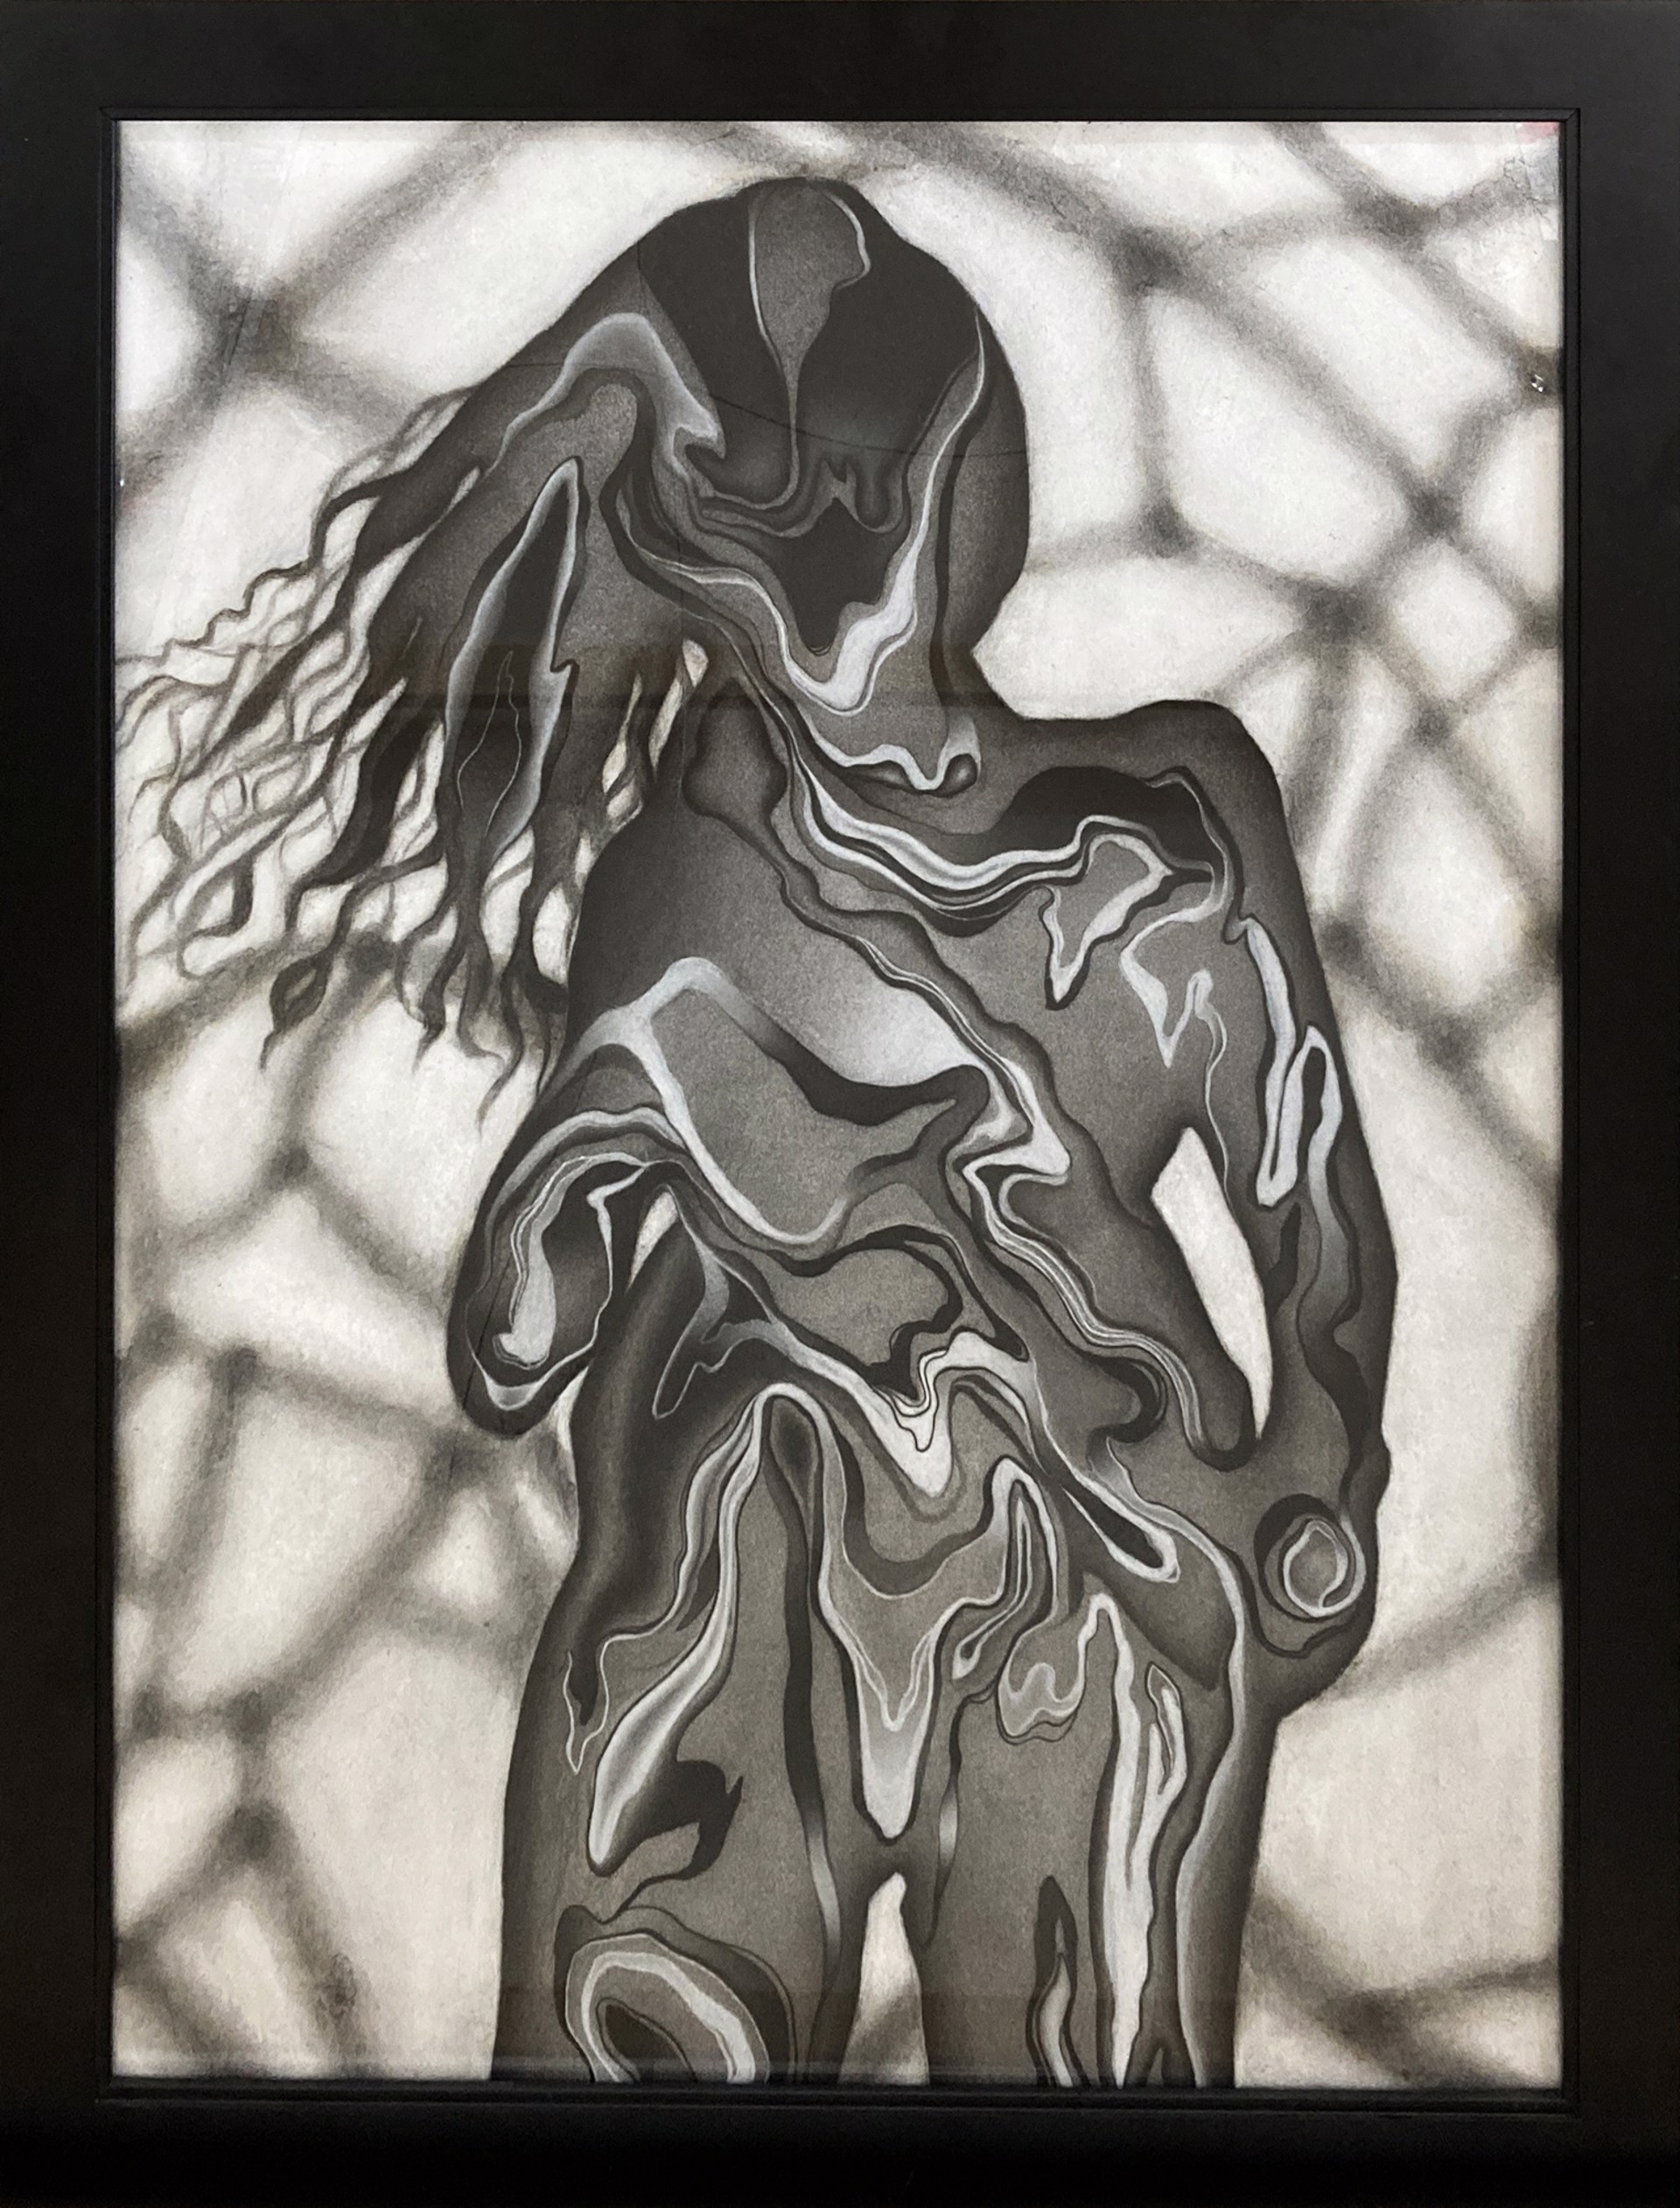 The Shadow Self by Leilani Gastelum